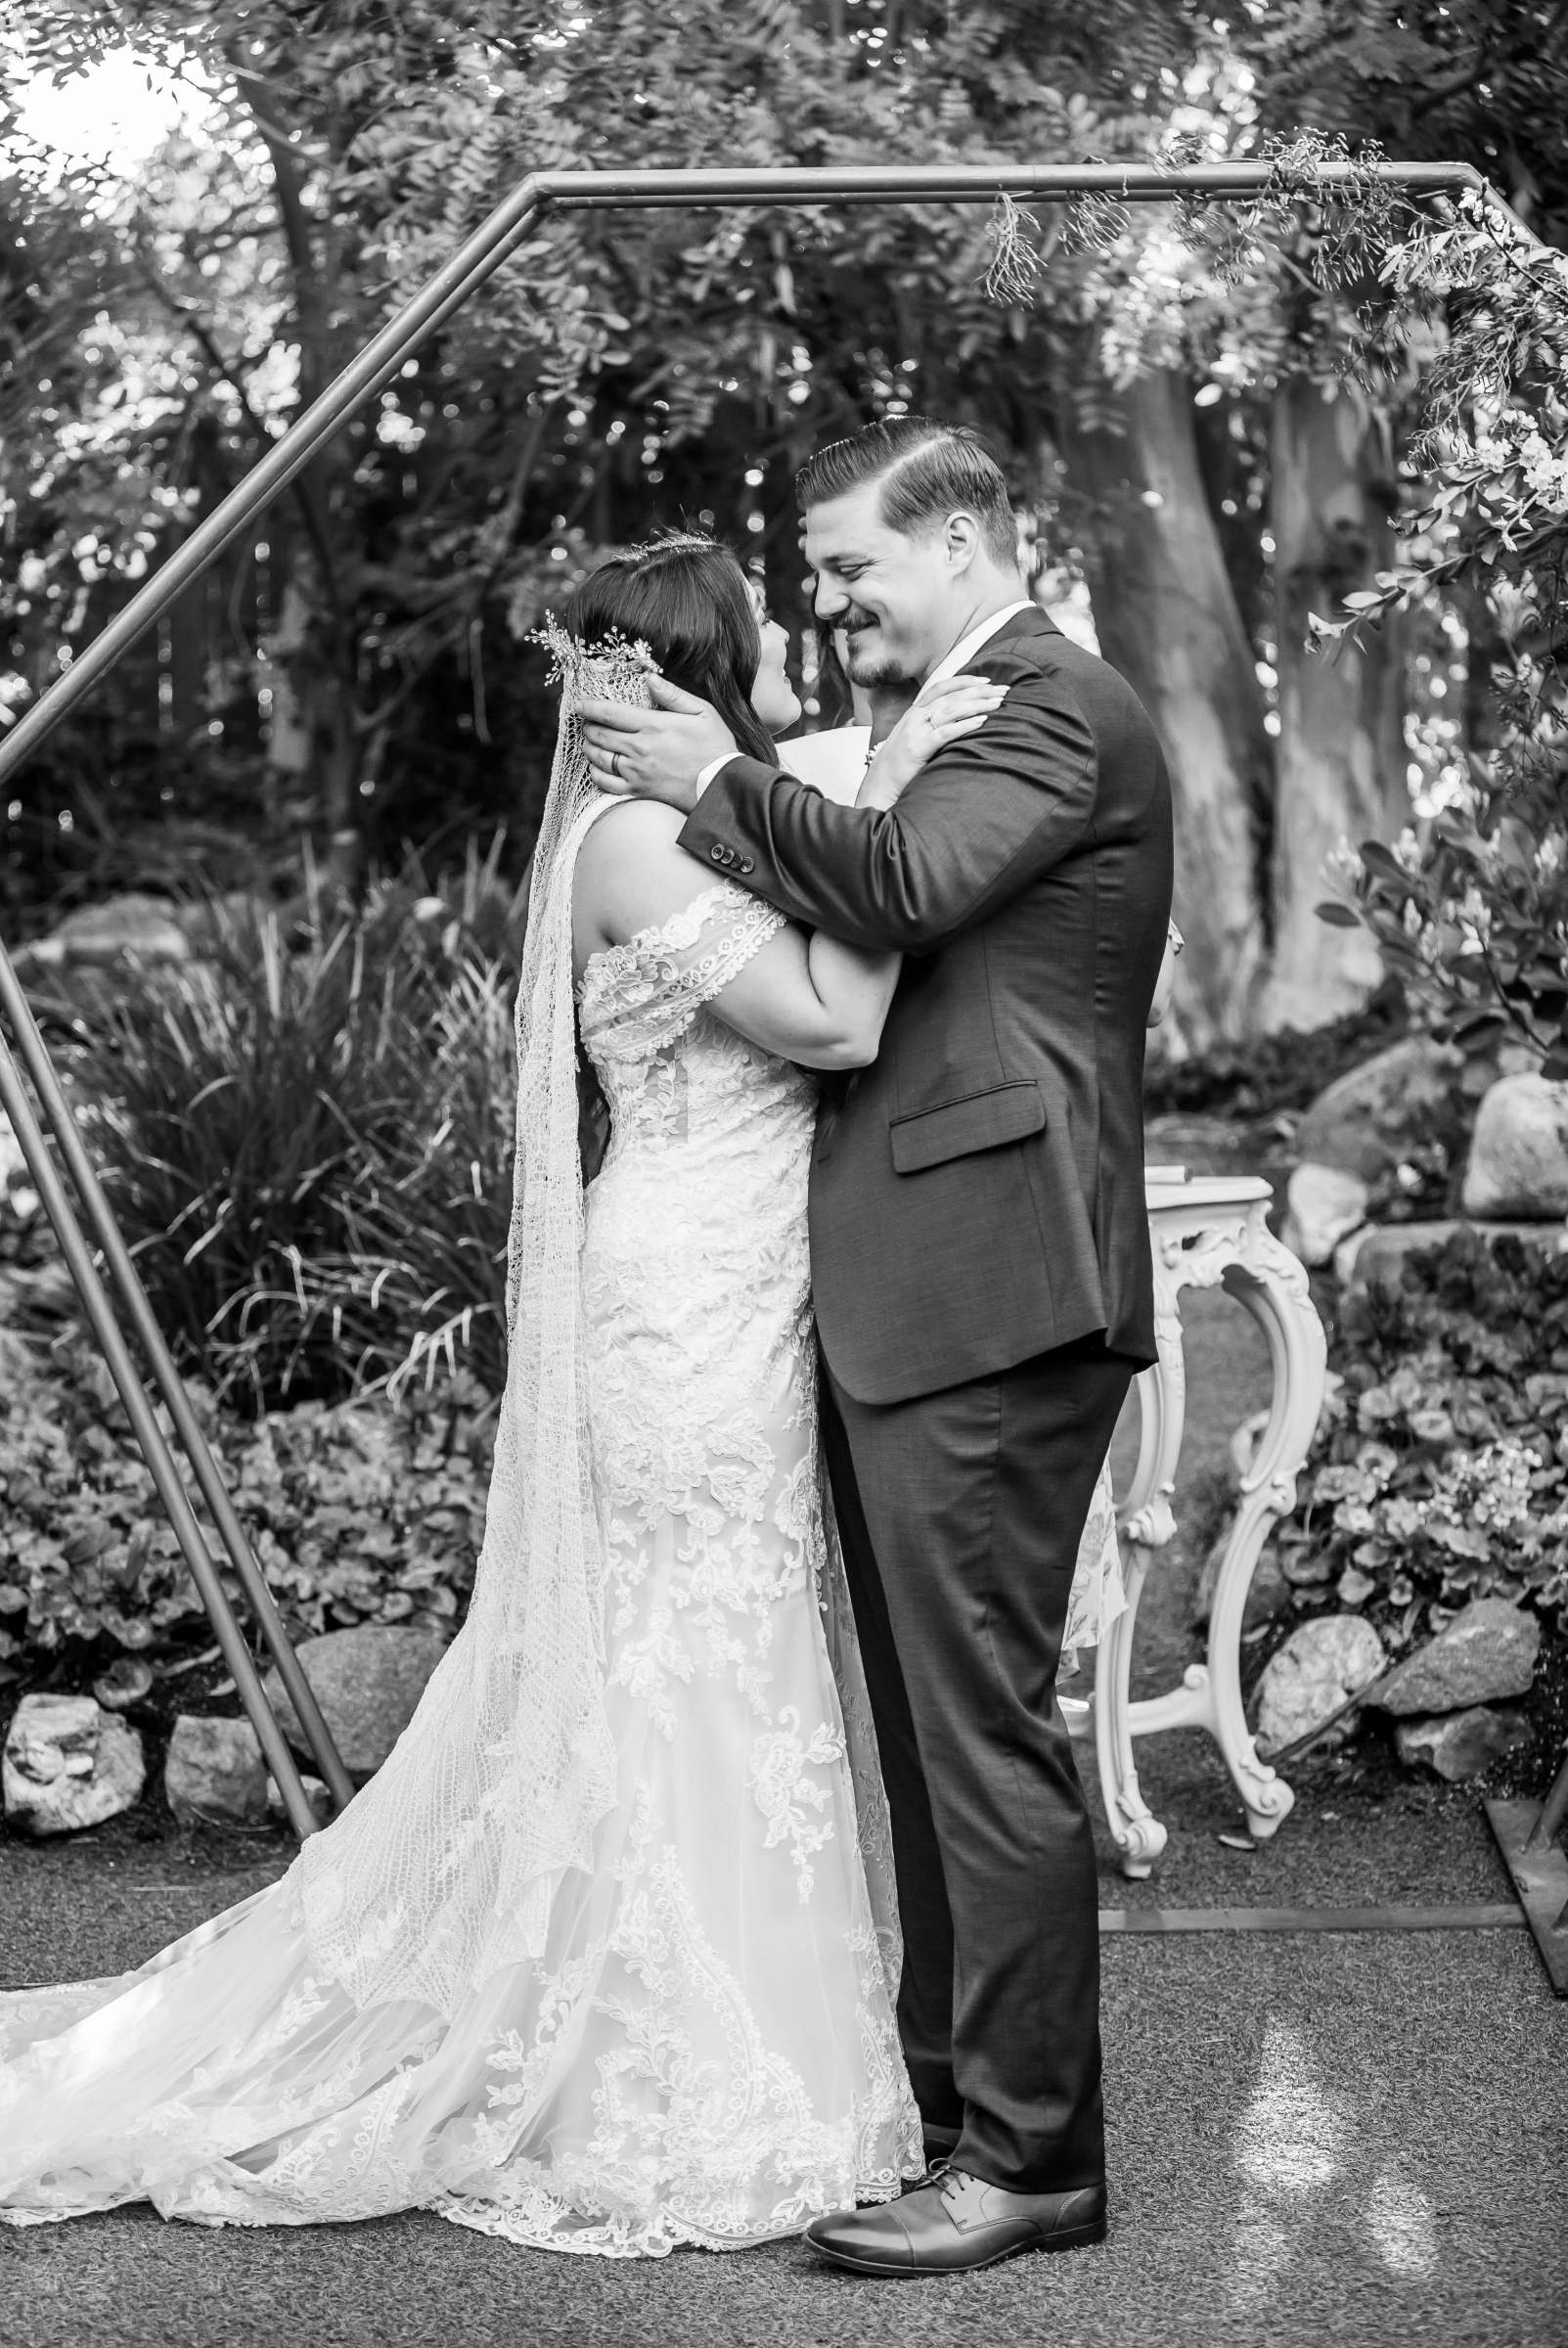 Twin Oaks House & Gardens Wedding Estate Wedding, Stephanie and Ilija Wedding Photo #17 by True Photography